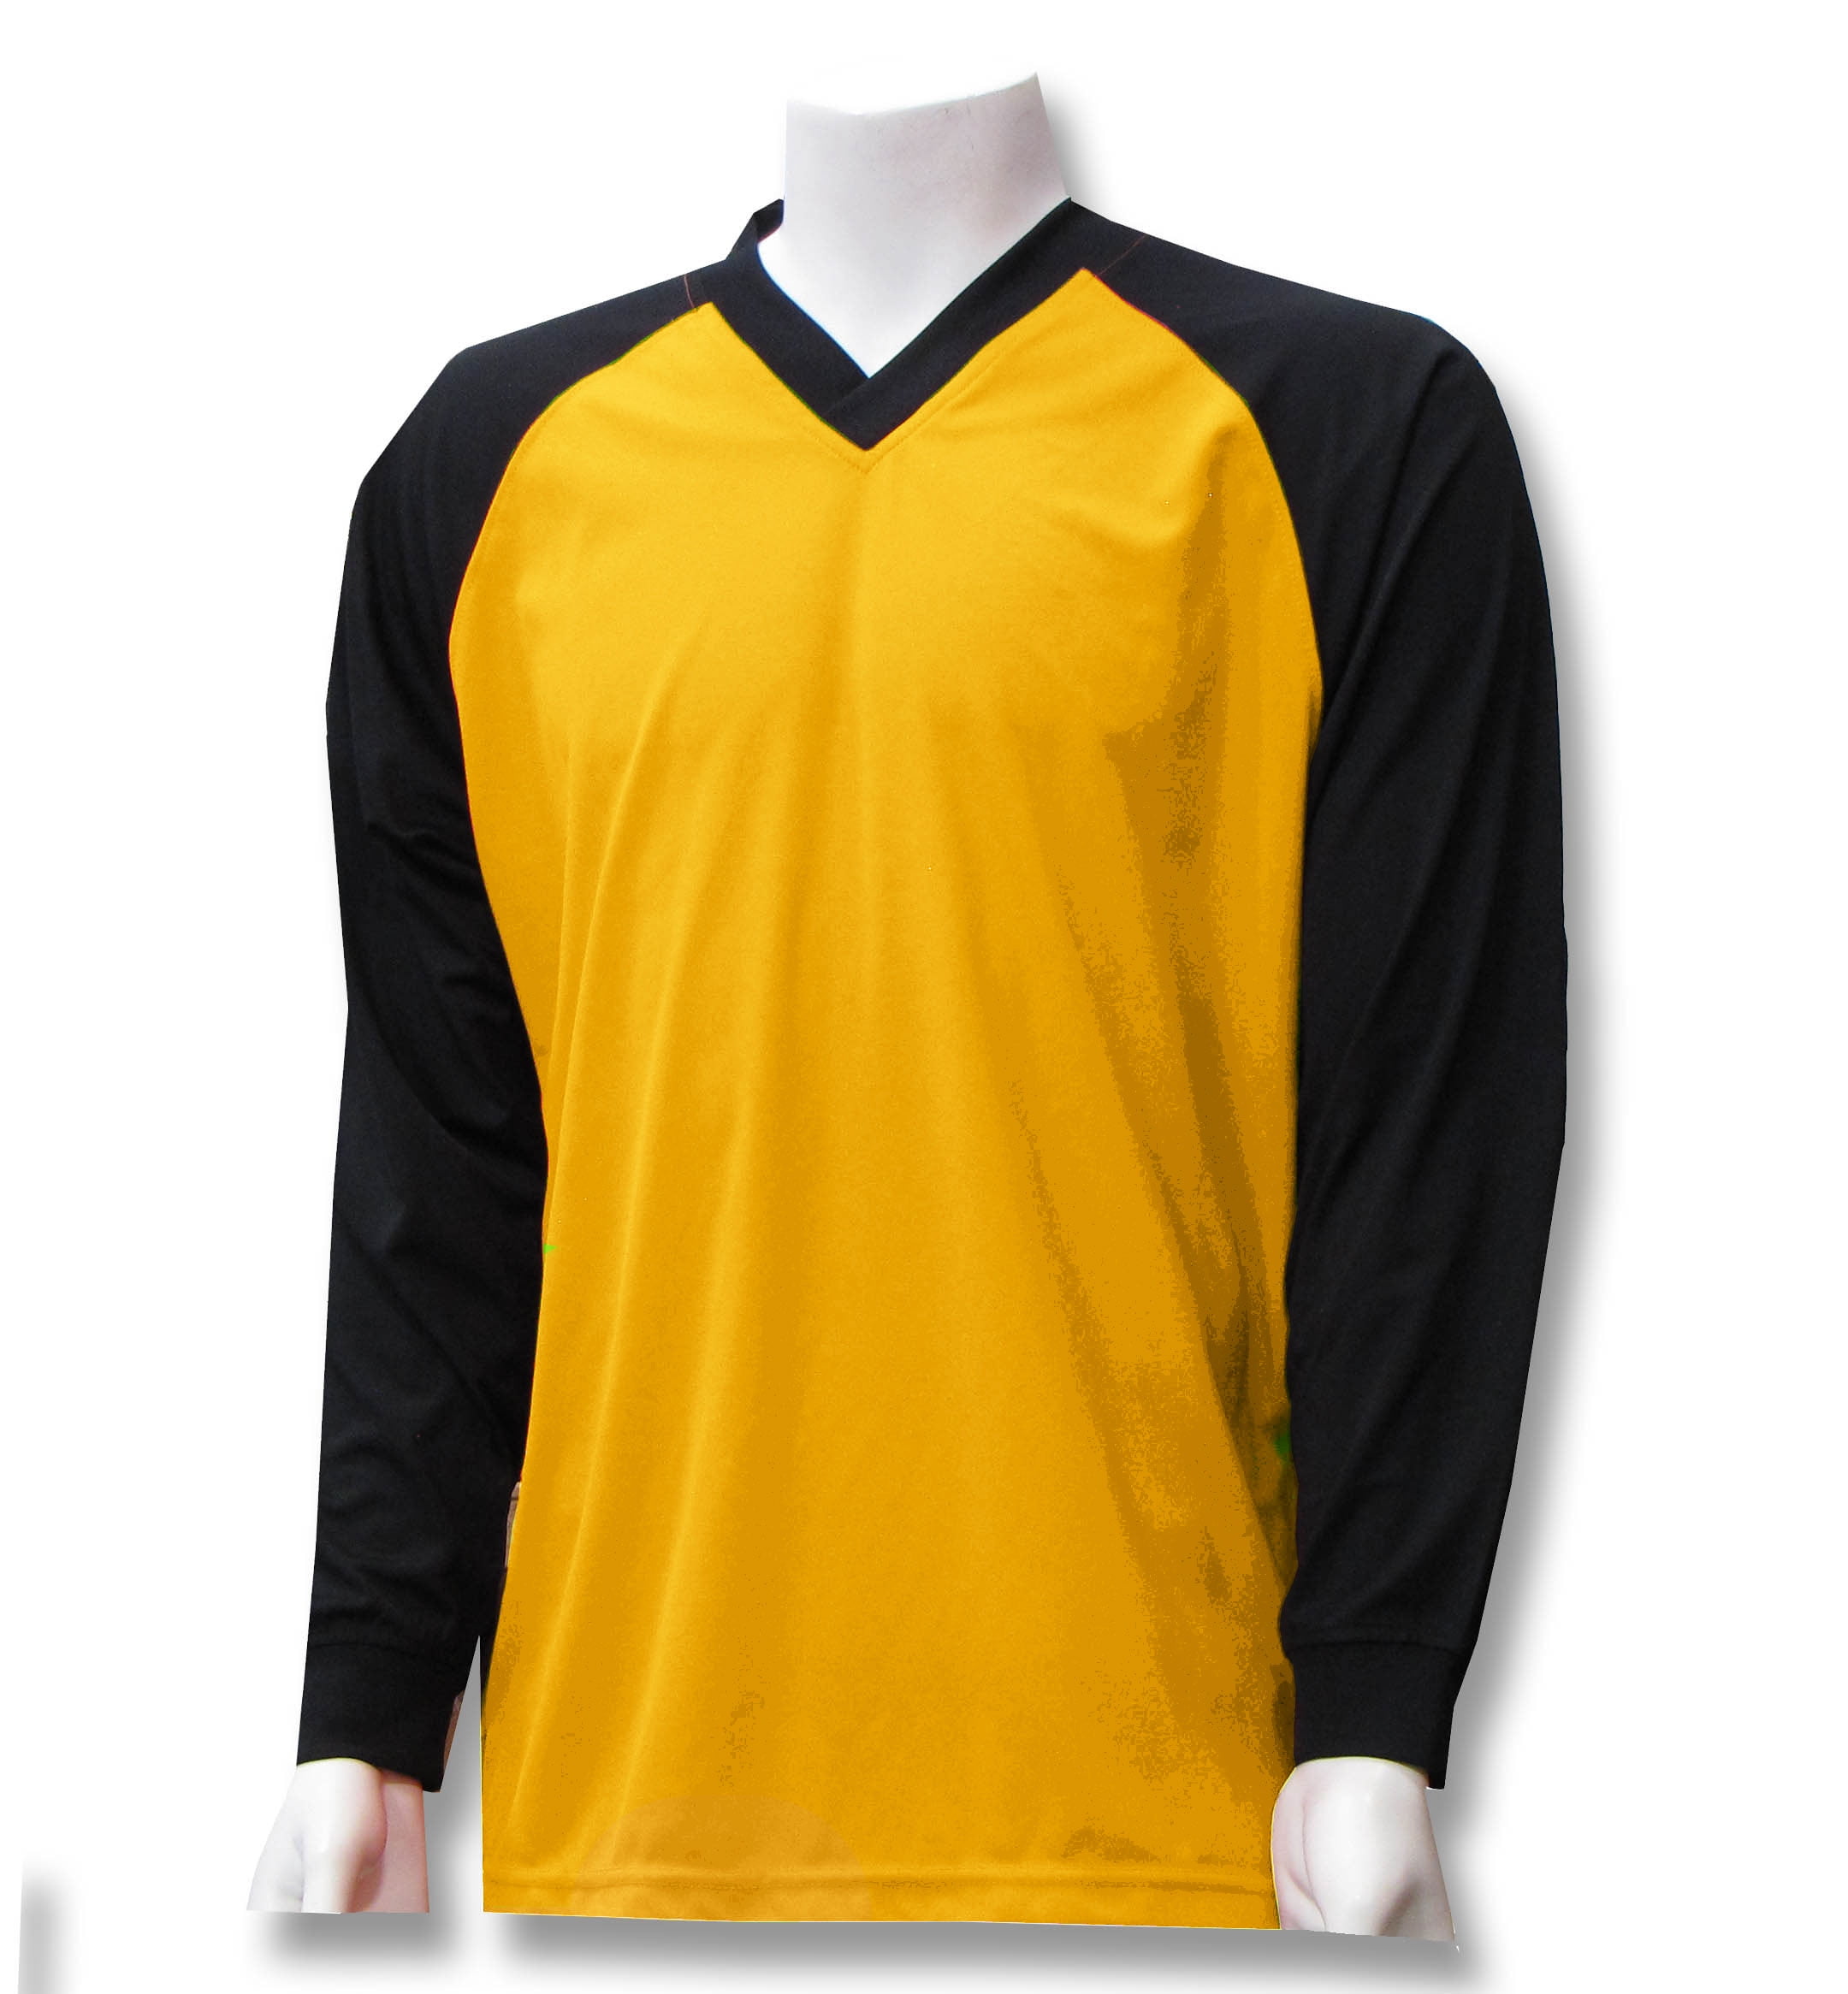 soccer goalie shirt